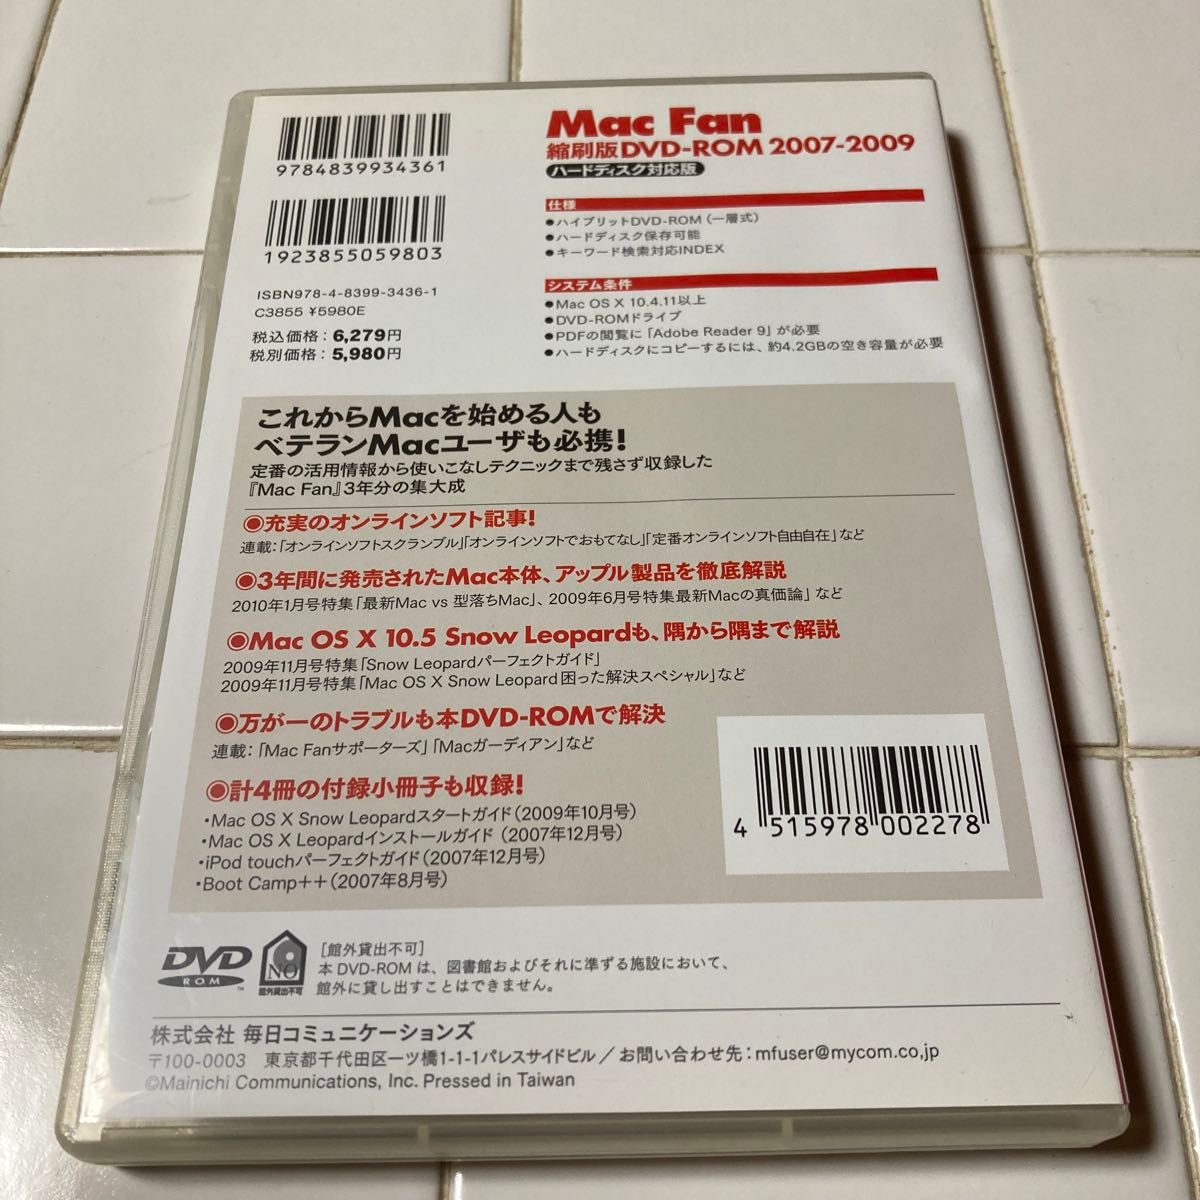 Mac fan縮尺版DVD ROM 2007-2009